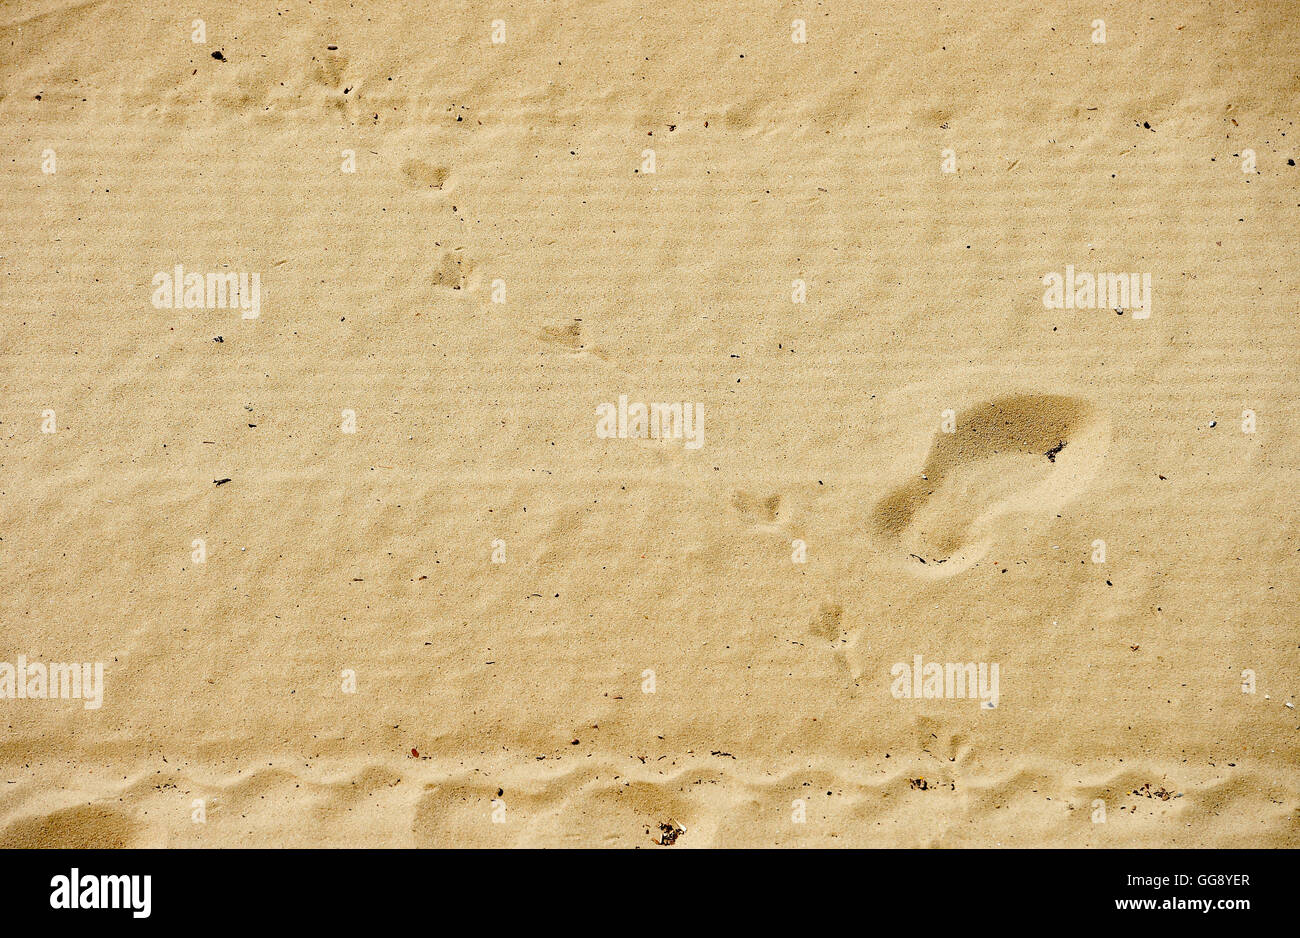 Berlino, Germania. 10 Ago, 2016. Le tracce nella sabbia durante la temperature di circa 18 gradi alla spiaggia di Wannsee a Berlino, Germania, 10 agosto 2016. Foto: RAINER JENSEN/dpa/Alamy Live News Foto Stock